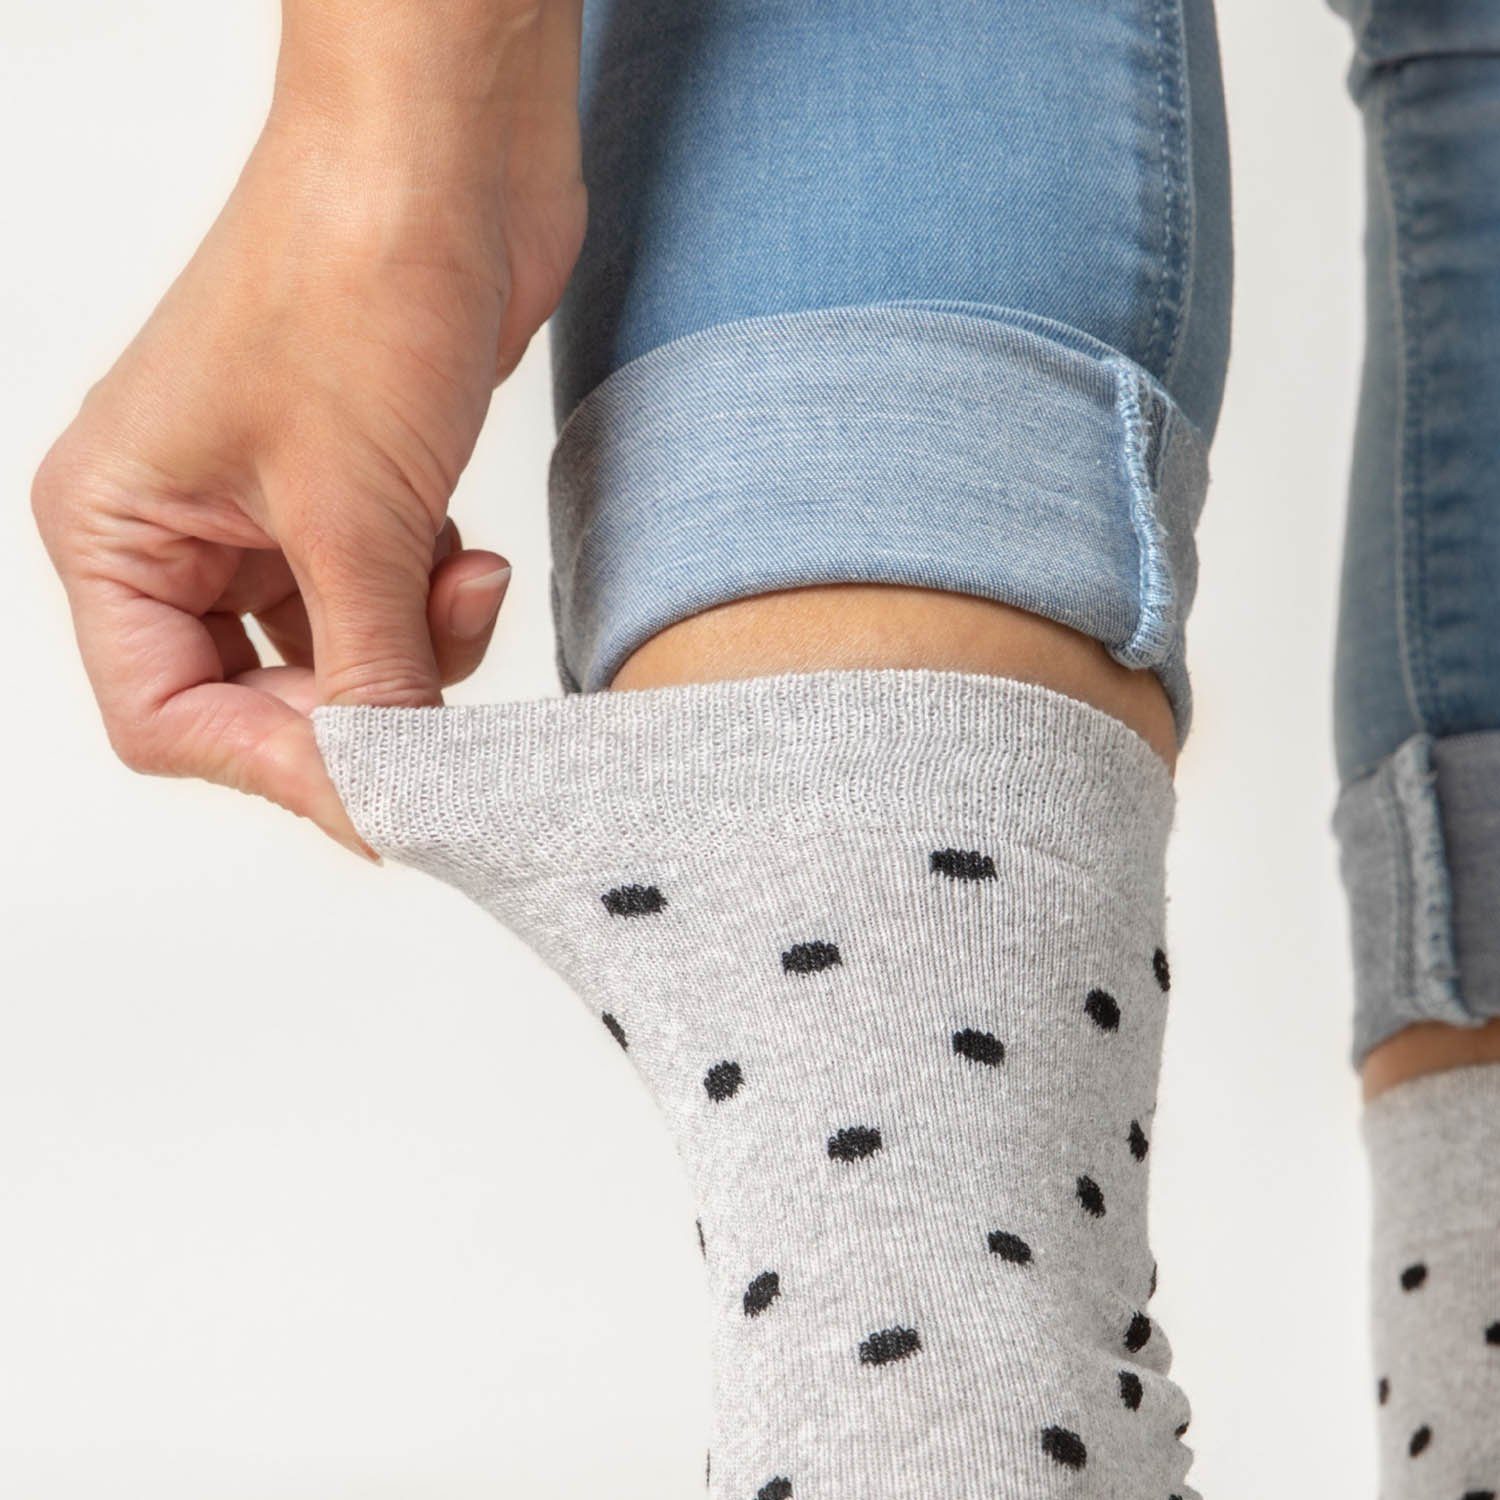 OCCULTO Basicsocken Damen Muster Socken (Modell: 10Black Milka) 10 (10-Paar) Paar